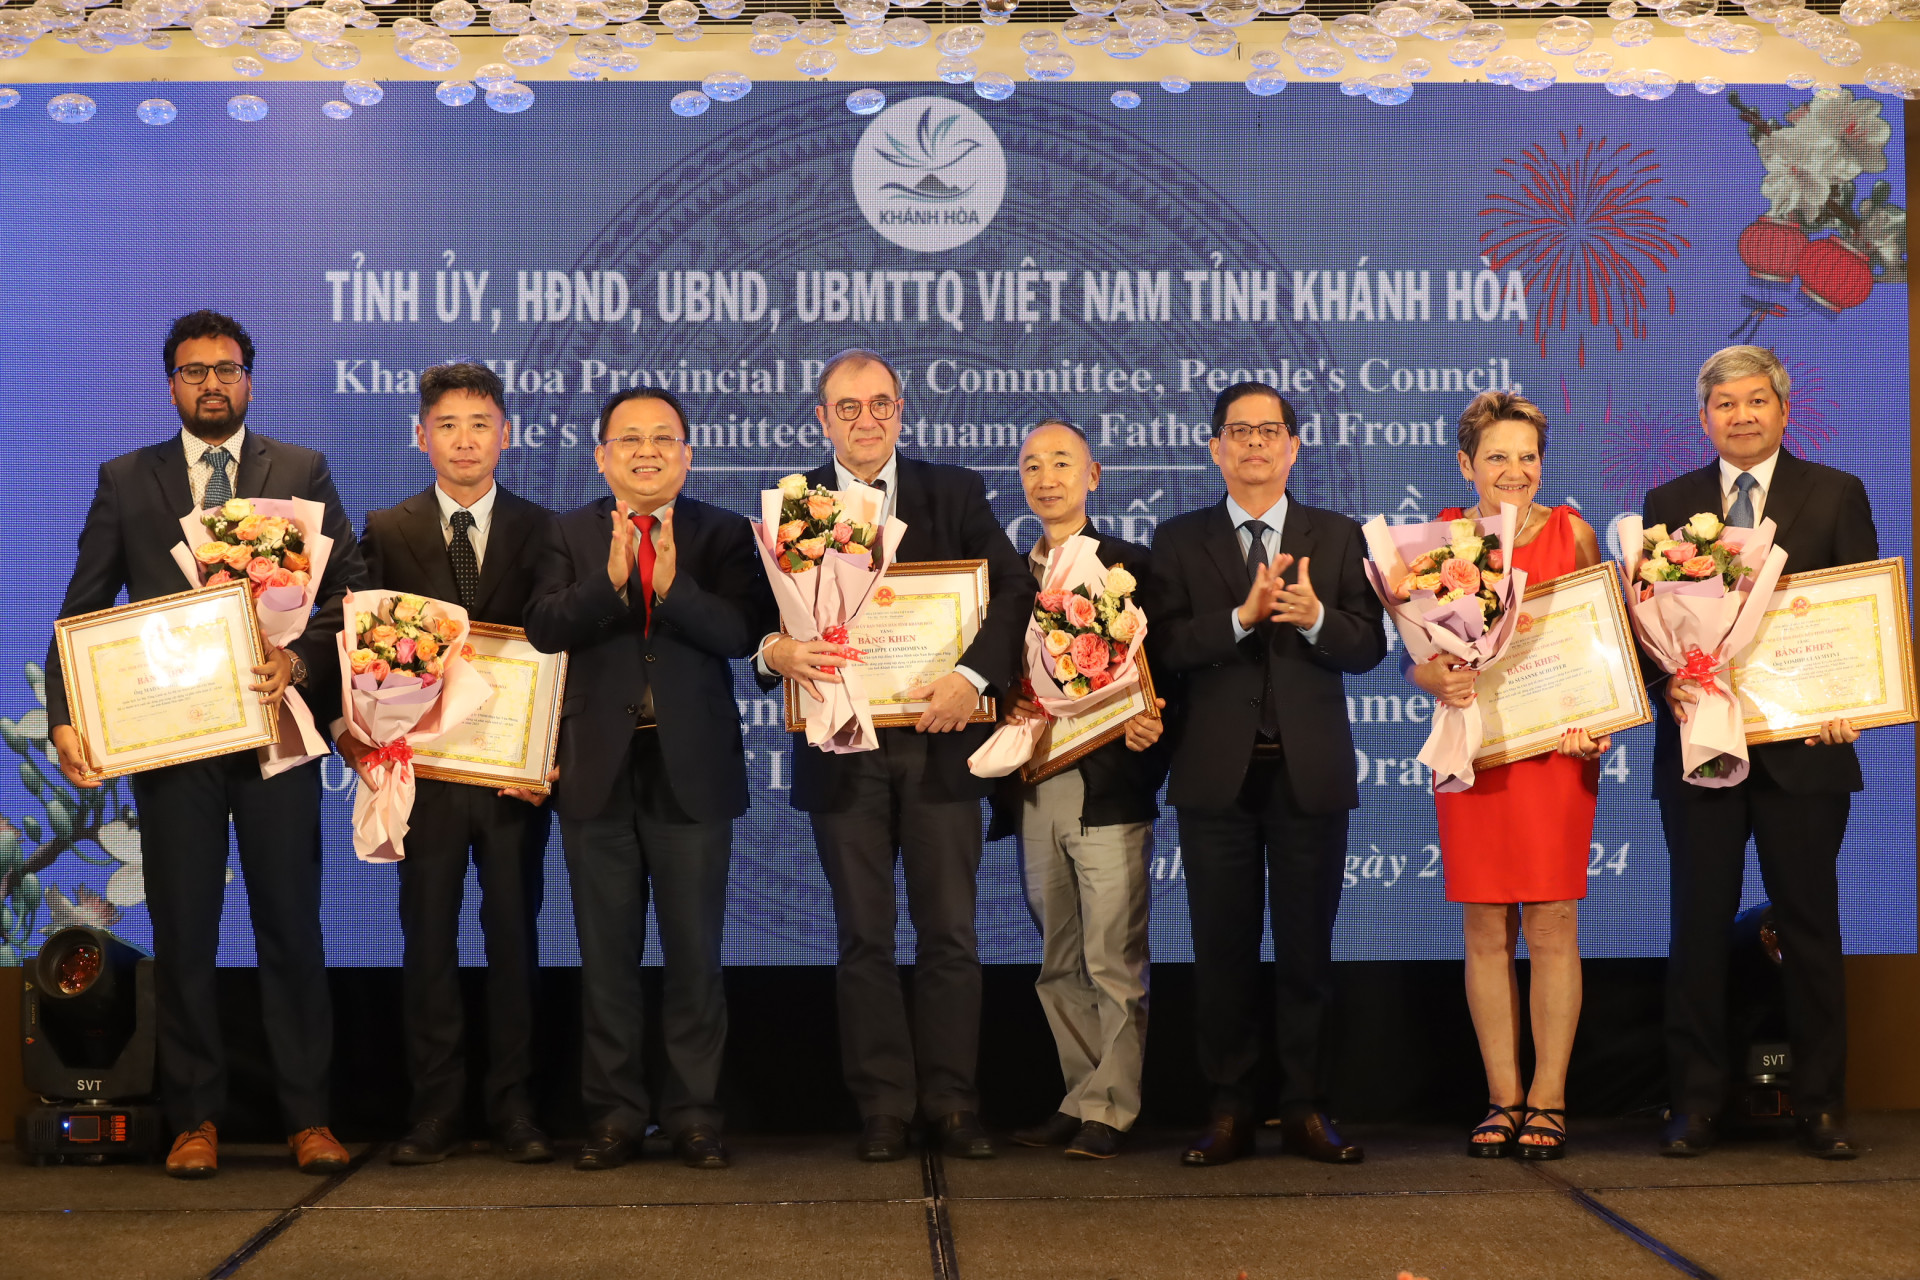 Đồng chí Nguyễn Tấn Tuân và đồng chí Lê Hữu Hoàng trao bằng khen, tặng hoa chúc mừng các cá nhân có thành tich xuất sắc.